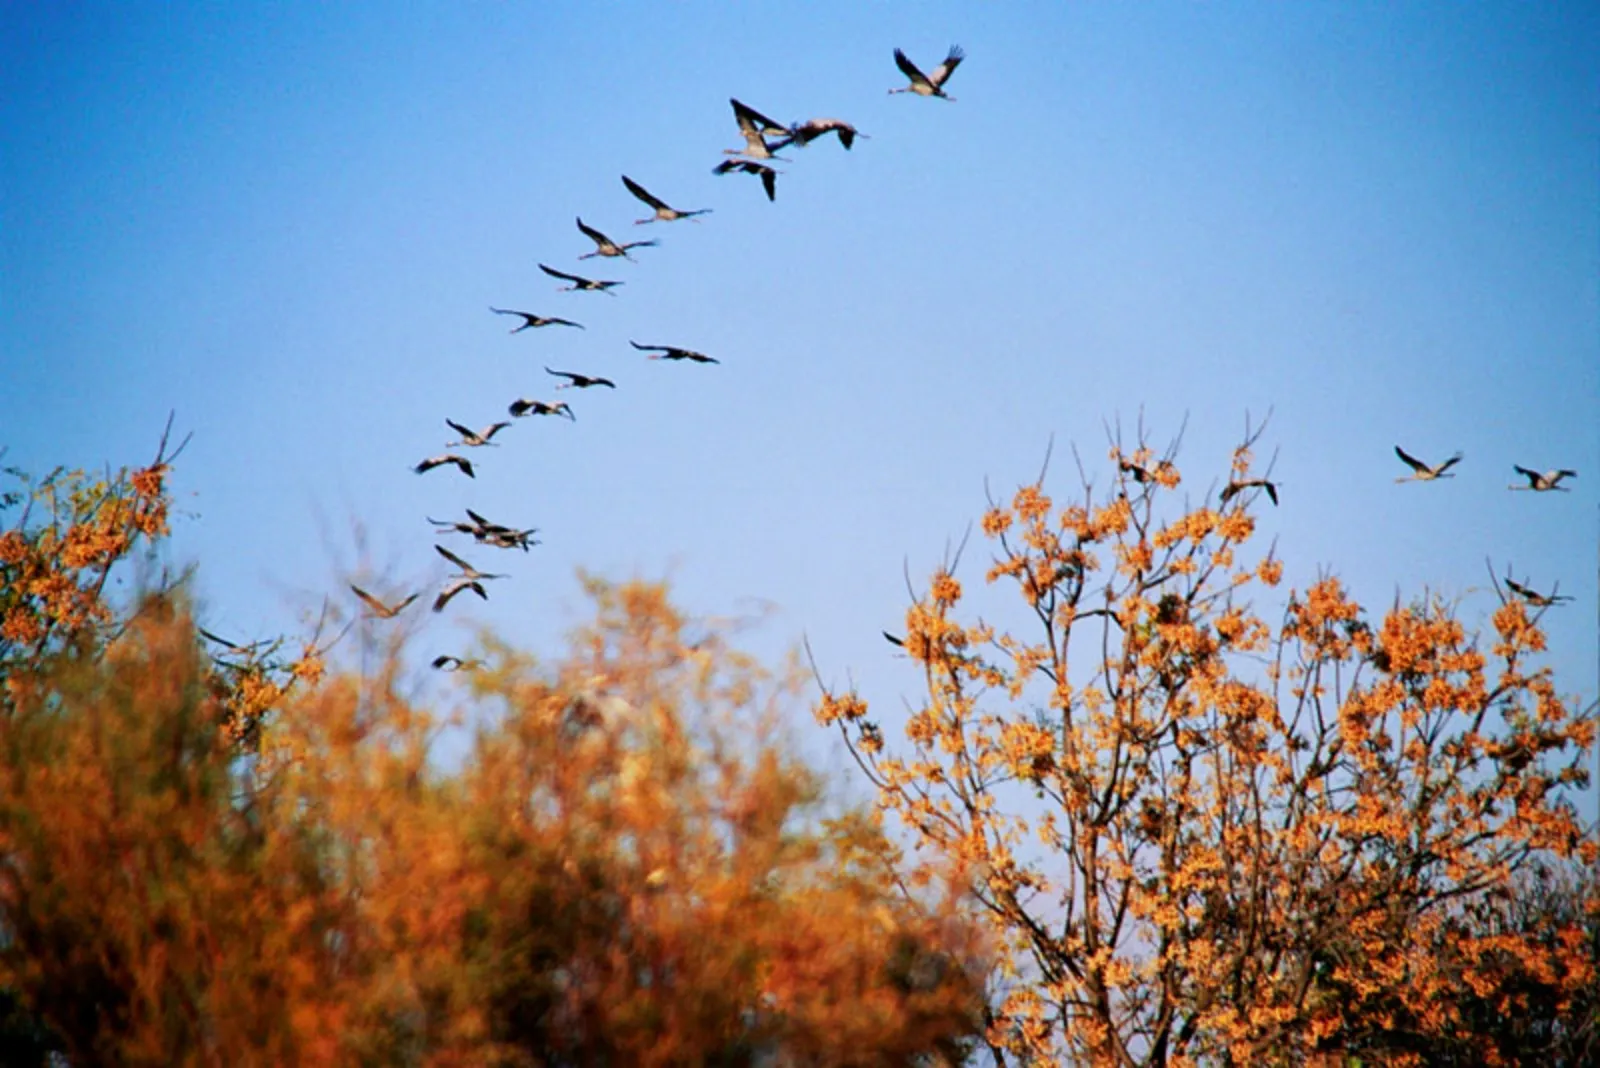 Приближается осень косяки журавлей летят. Перелетные птицы улетают на Юг. Птицы улетают теплые края Юг. Осенний Клин перелетных птиц. Осенью перелетные птицы улетают на Юг.